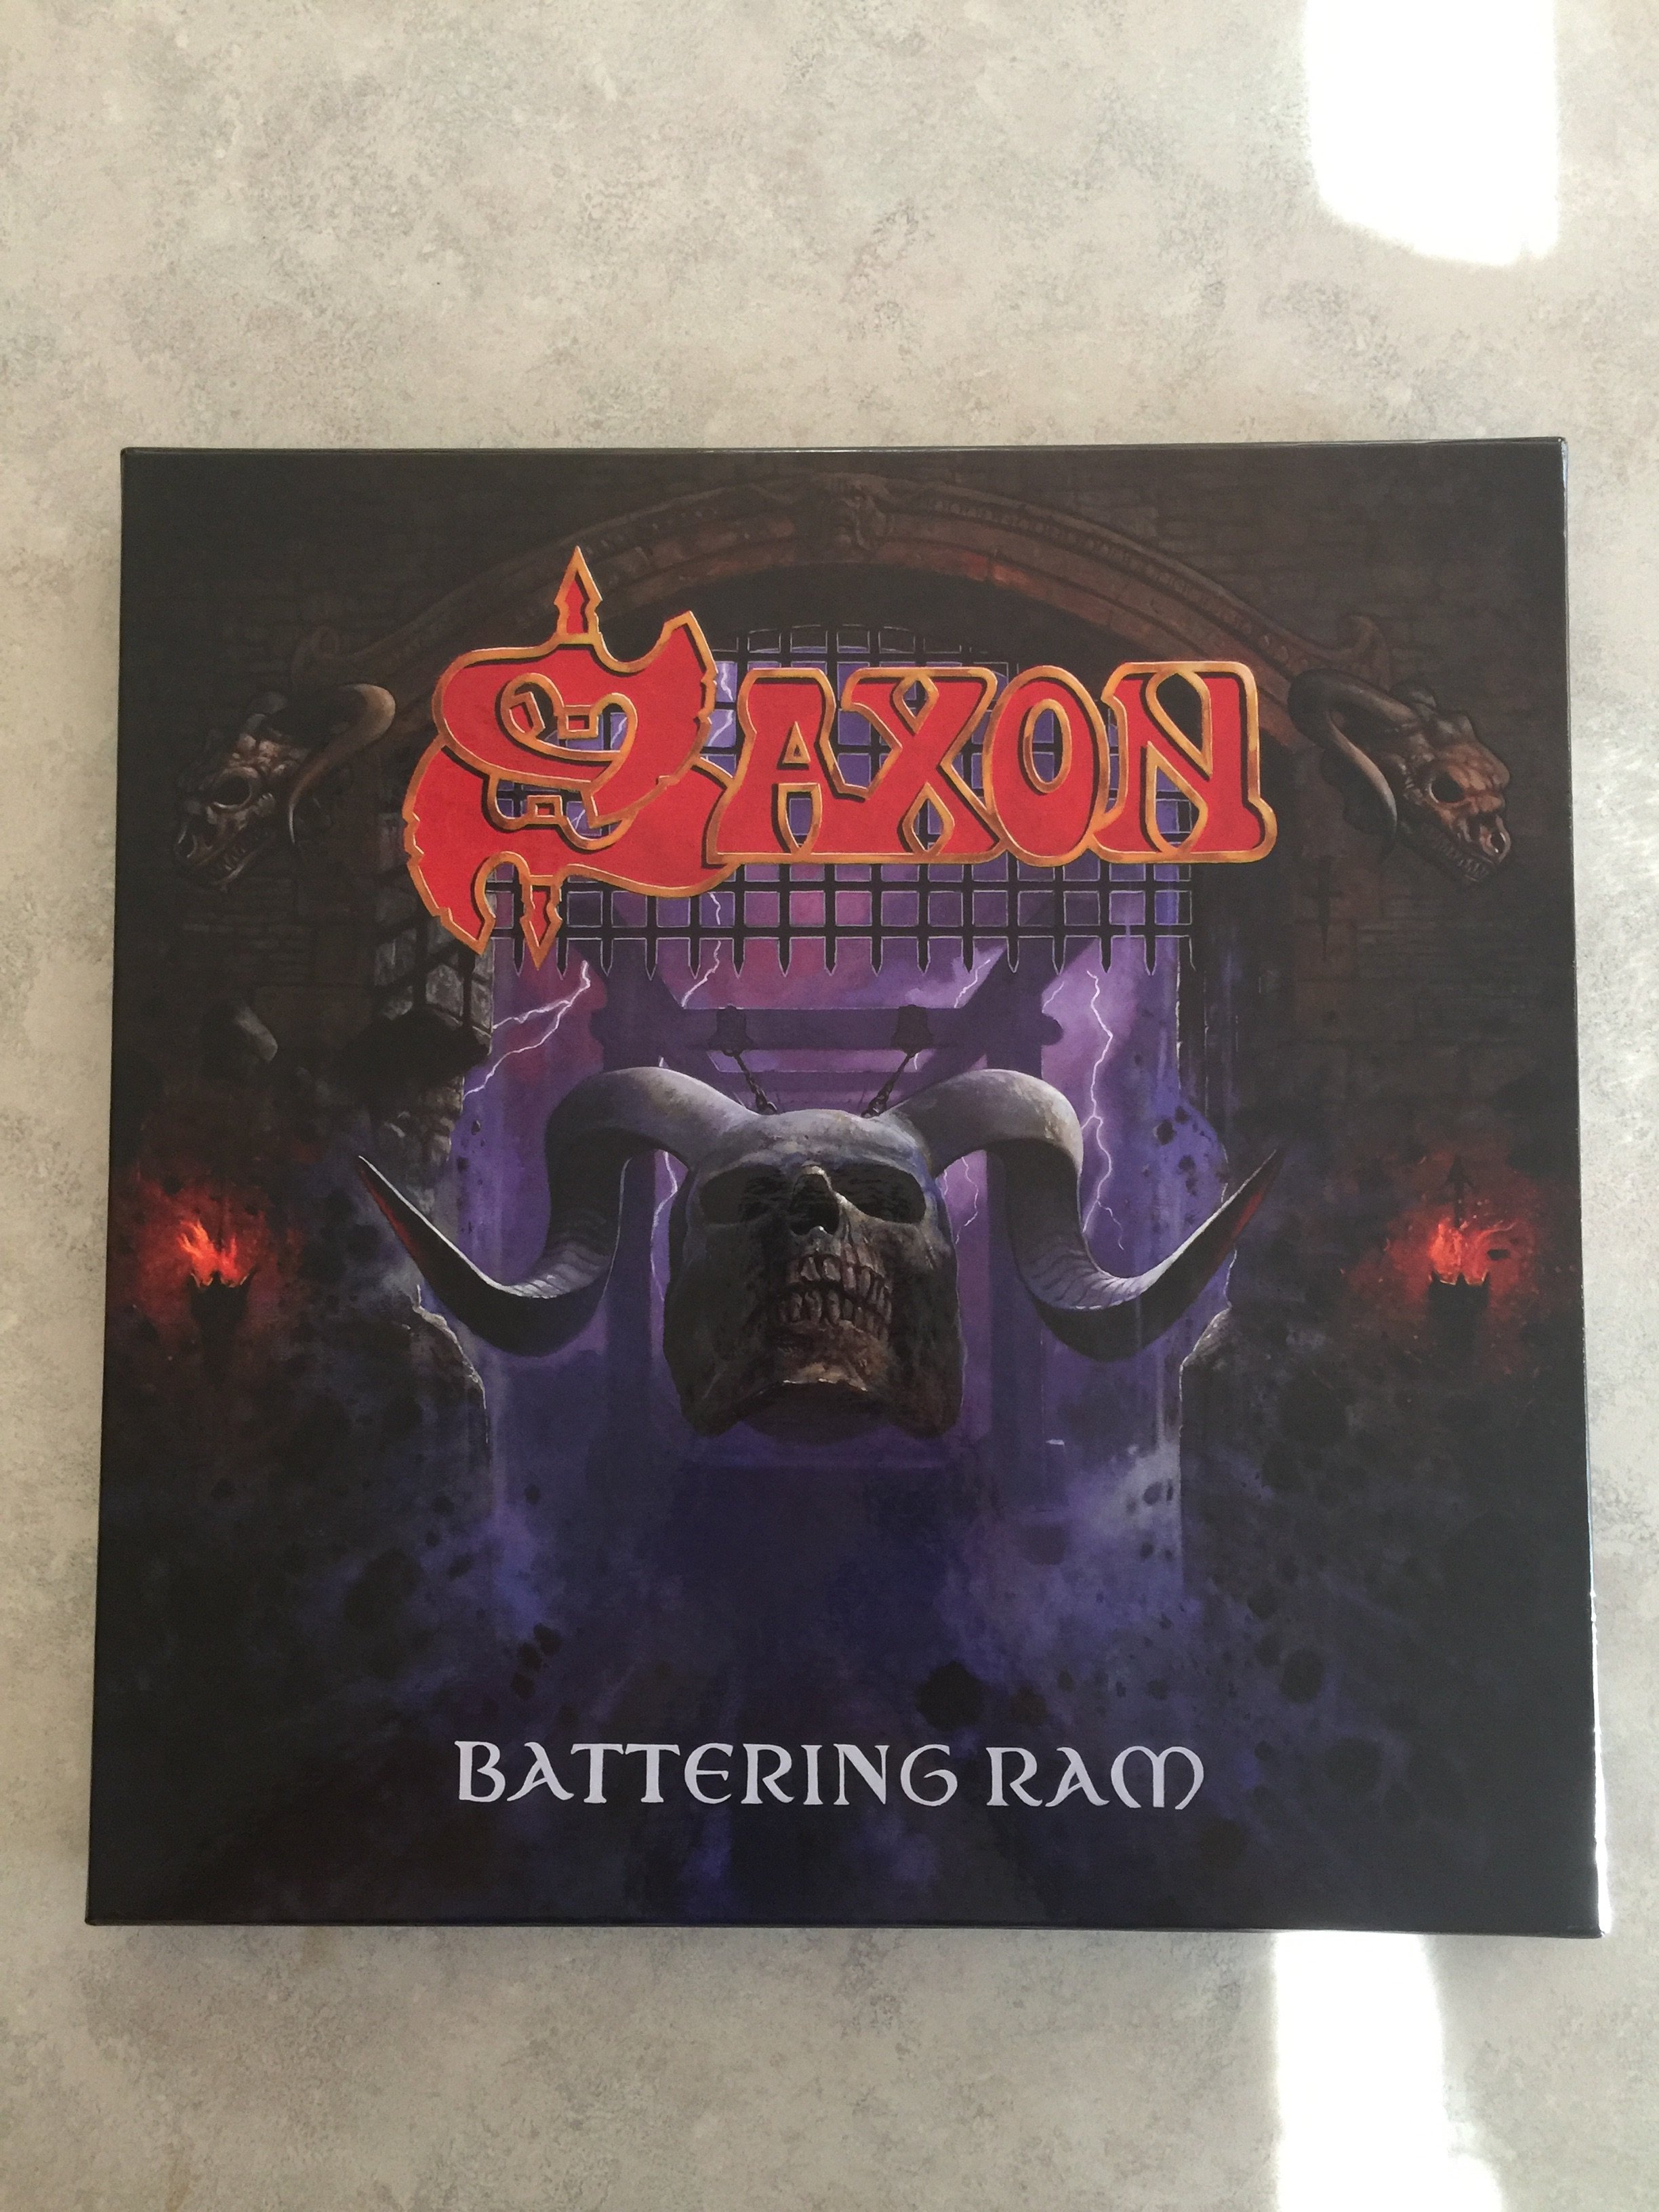 Saxon - Battering Ram (Deluxe)